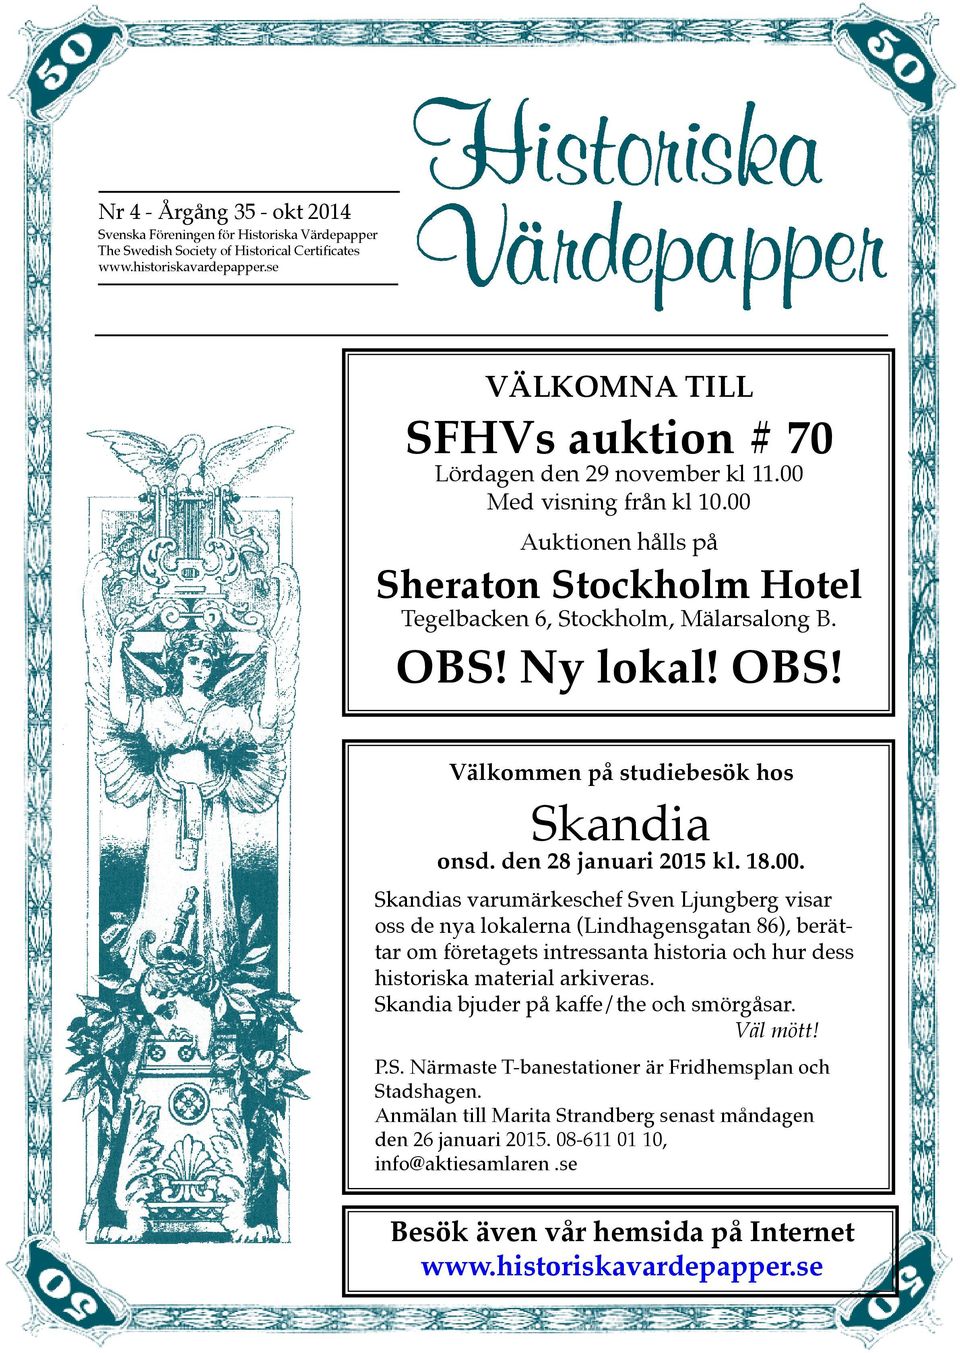 Ny lokal! OBS! Välkommen på studiebesök hos Skandia onsd. den 28 januari 2015 kl. 18.00.